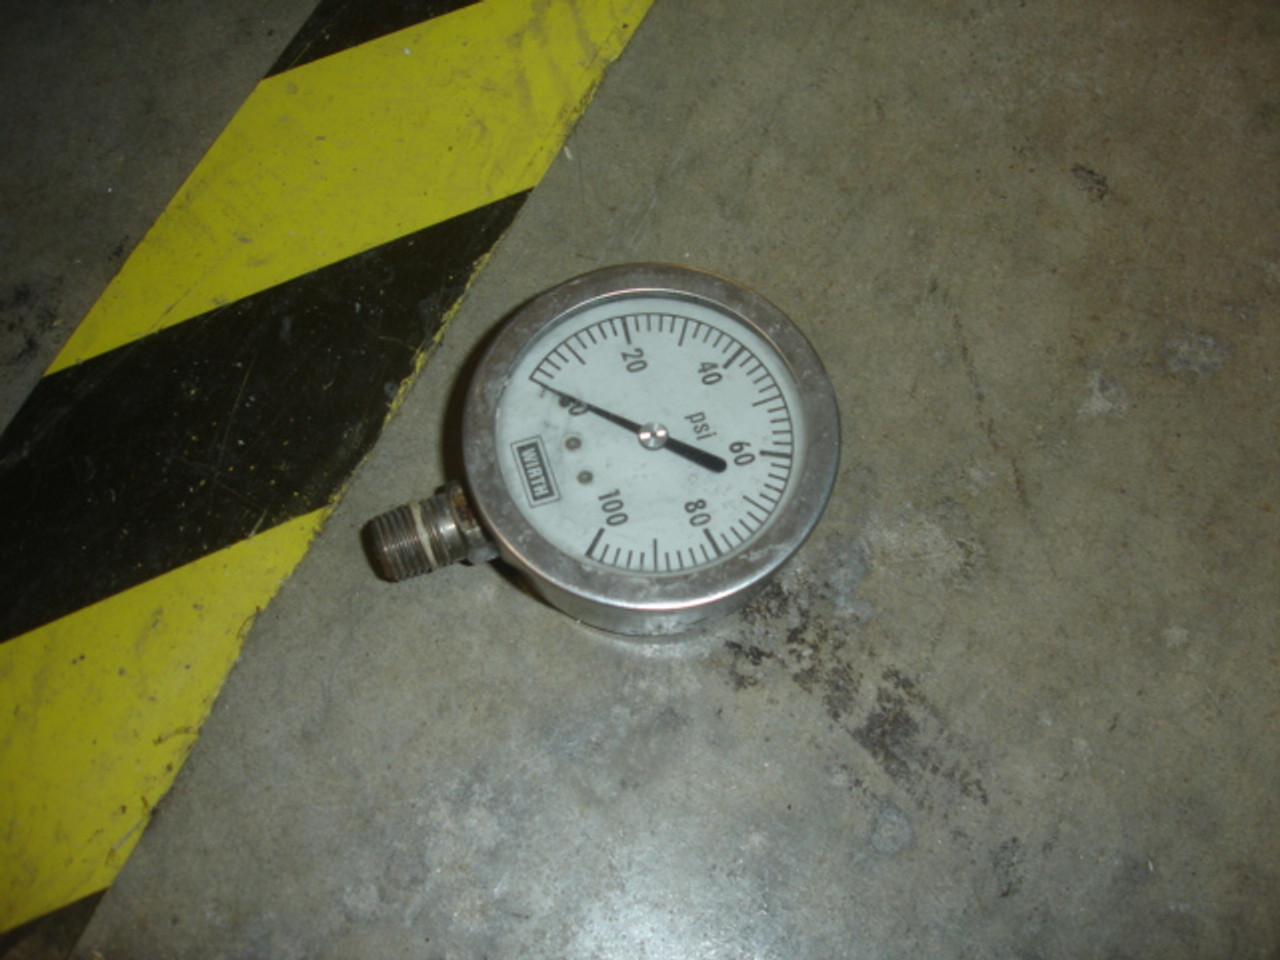 Wirth Gauge4 Pressure Gauge-0-100PSI,1/4"MPT,2 5/8" Dial